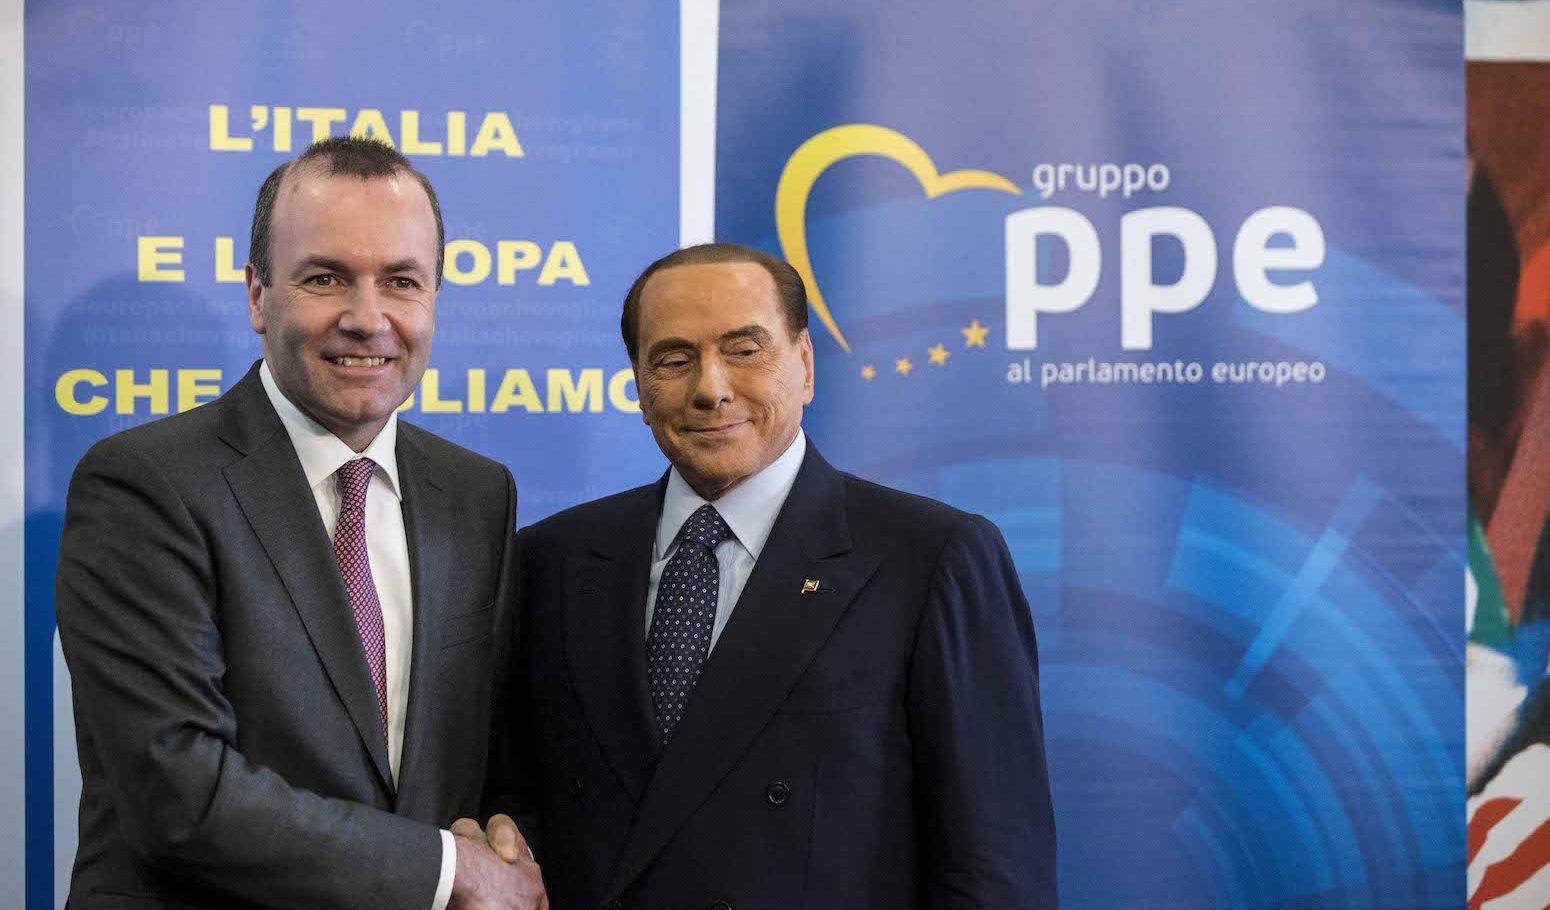 Berlusconi al Quirinale, nel 'teatrino' propagandistico anche Manfred Weber del Ppe: 